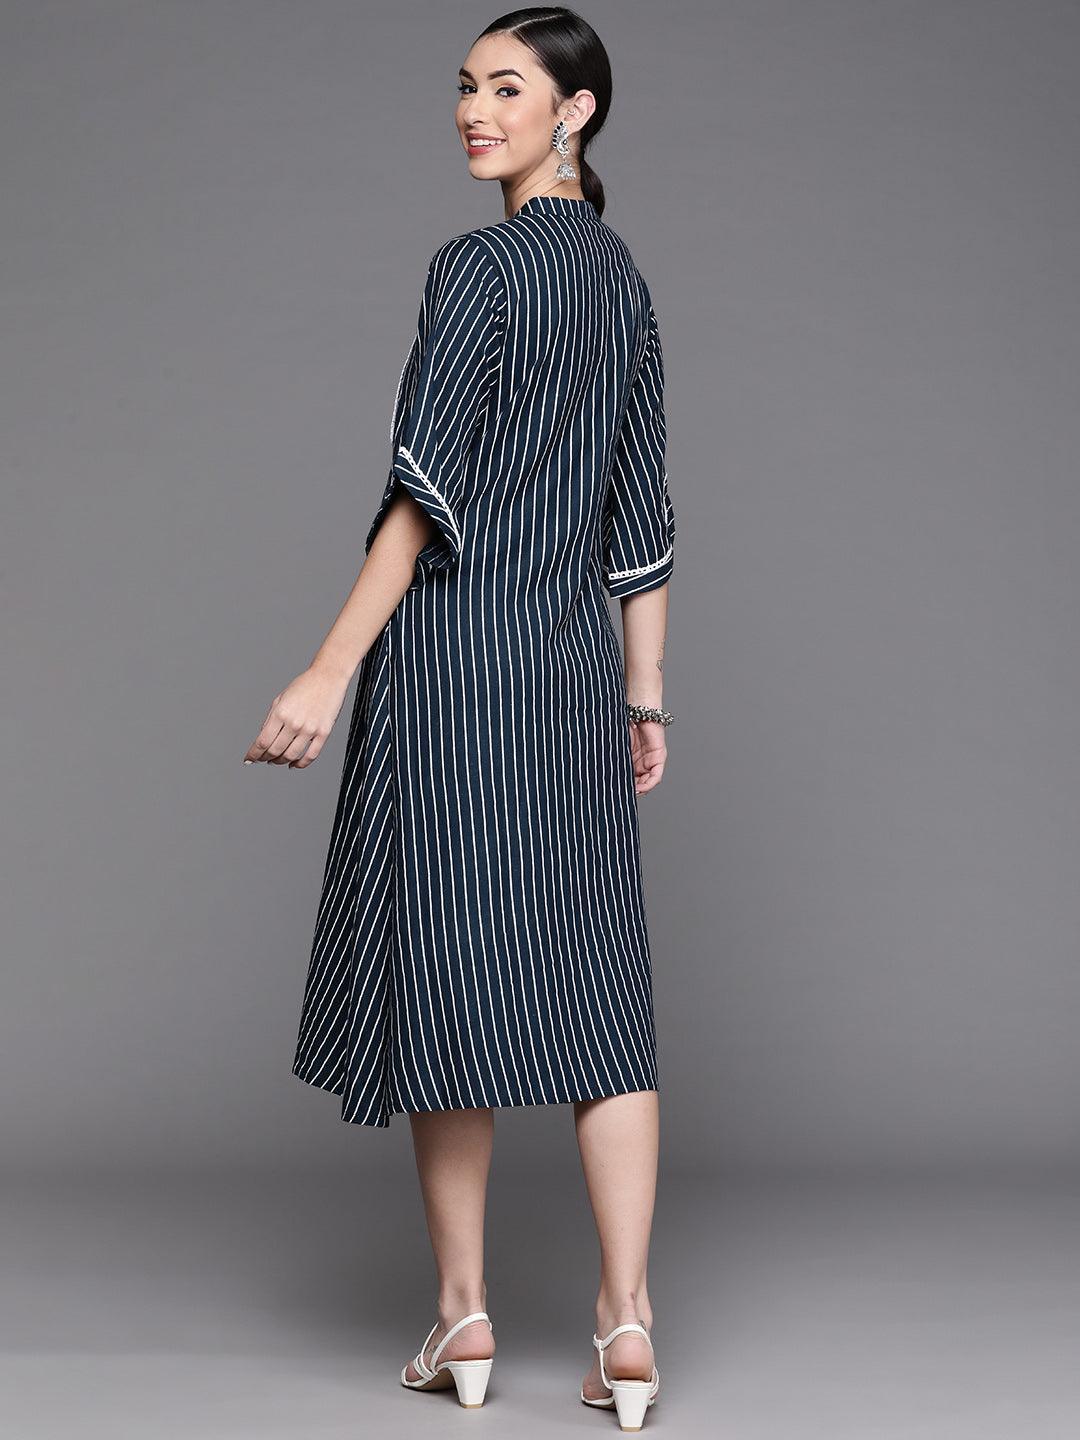 Blue Striped Cotton Dress - ShopLibas